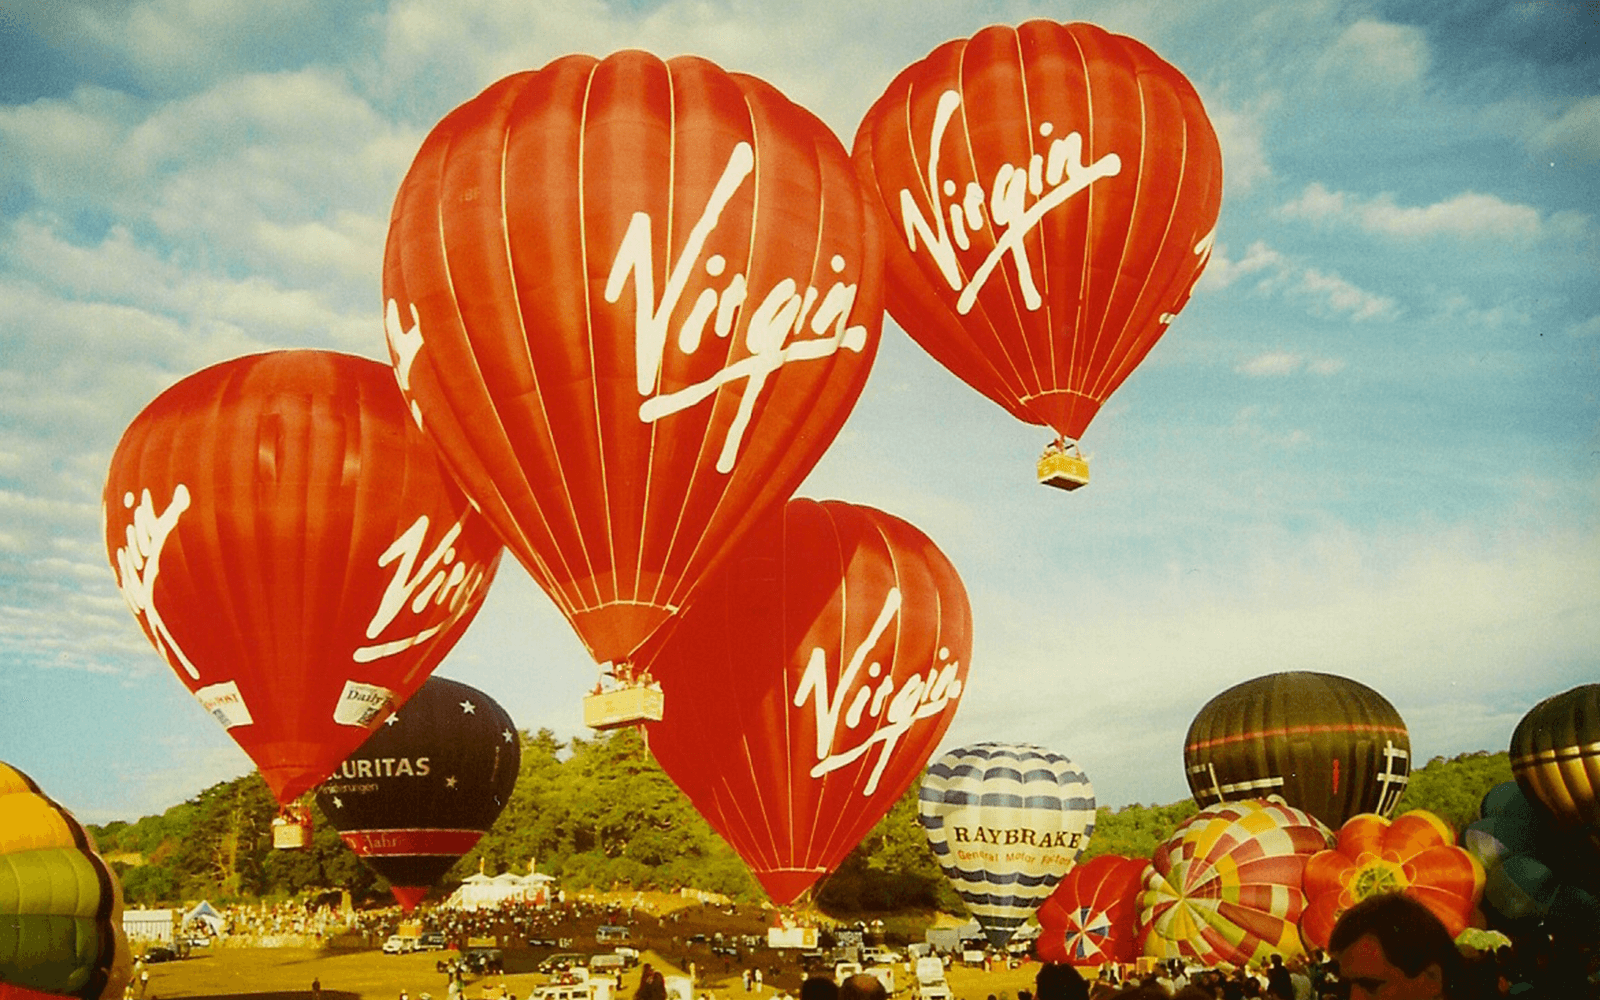 Four Virgin Balloon Flights taking to the sky at the Bristol Balloon Fiesta in 1995